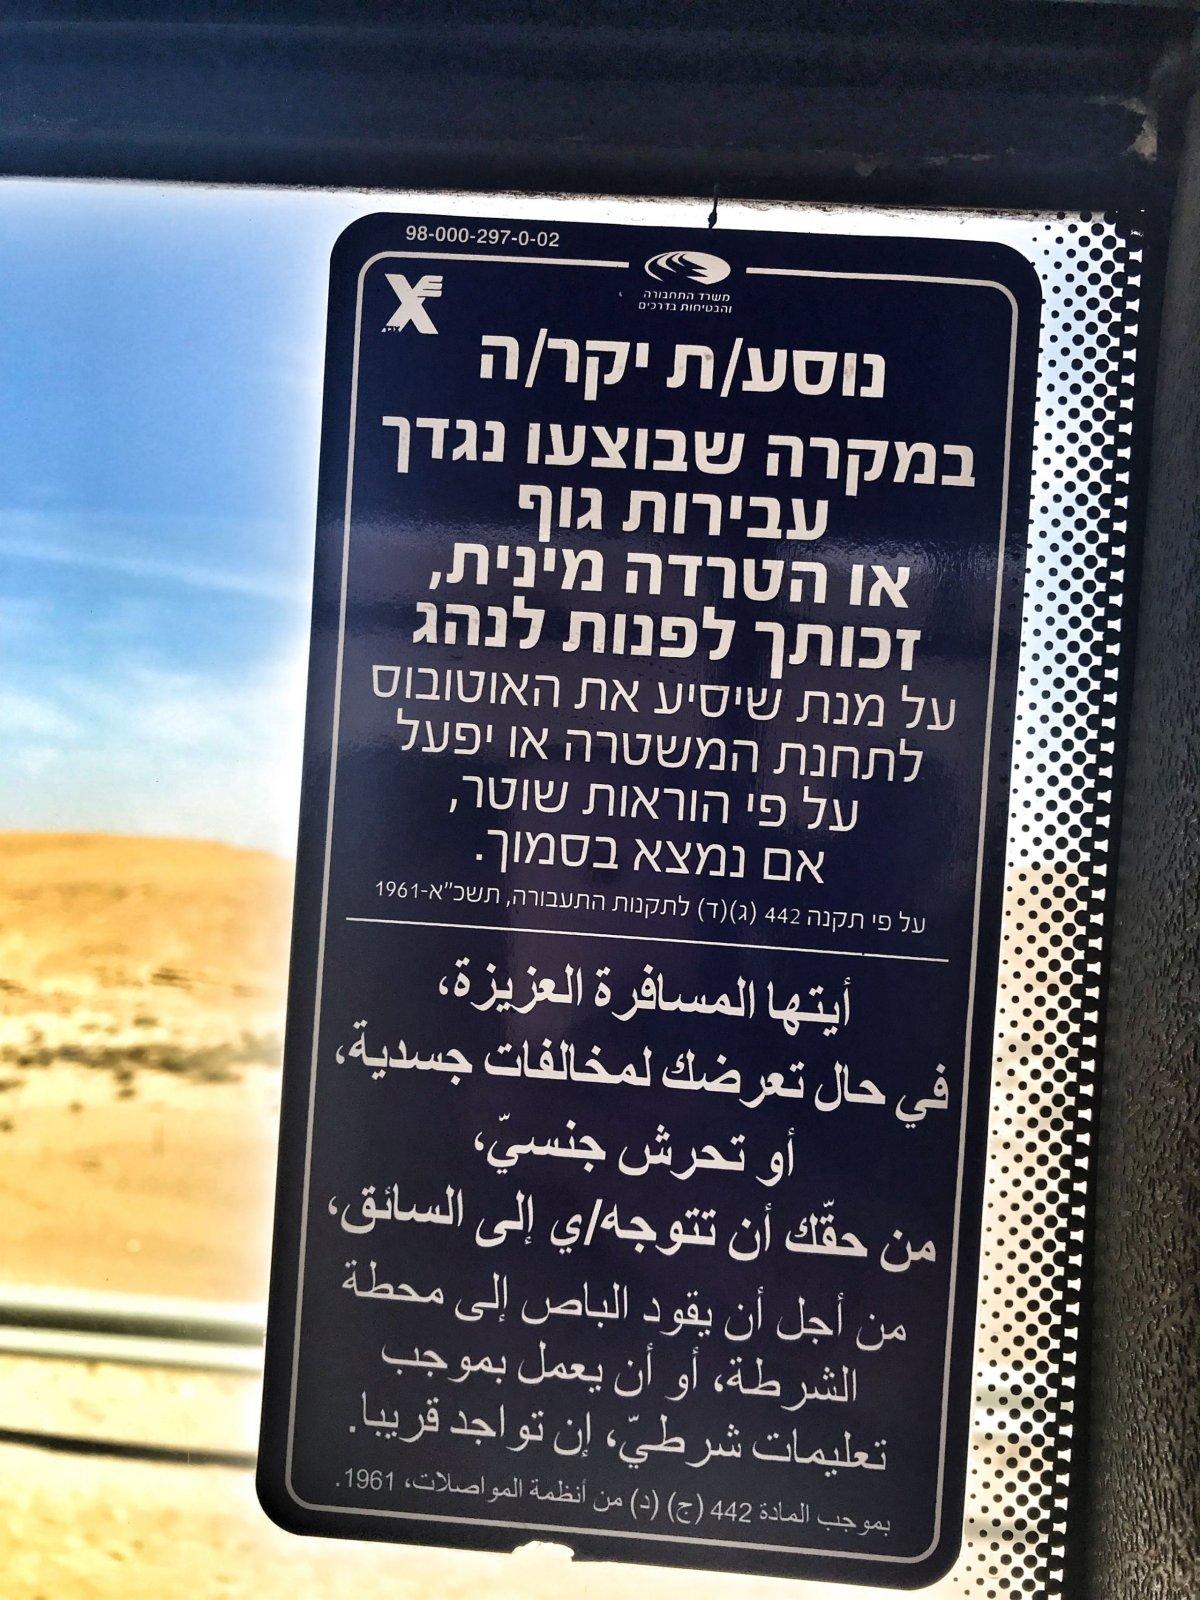 Cesta busem z letiště do Eilat